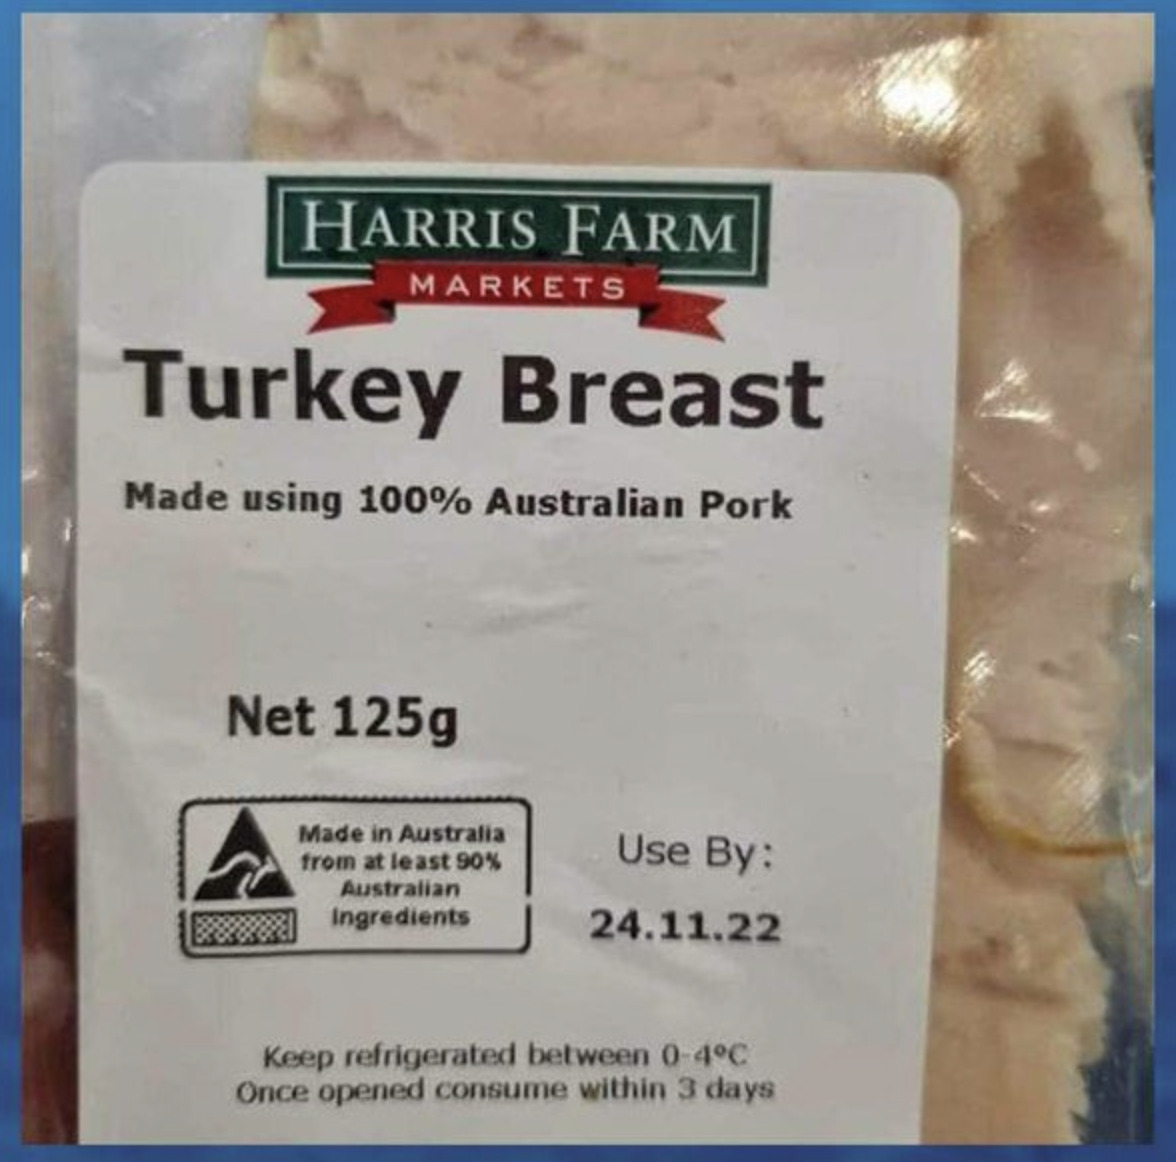 Hindi göğsündeki “%100 domuz eti” etiketinin görseli İngiltere’den değil Avustralya’dan